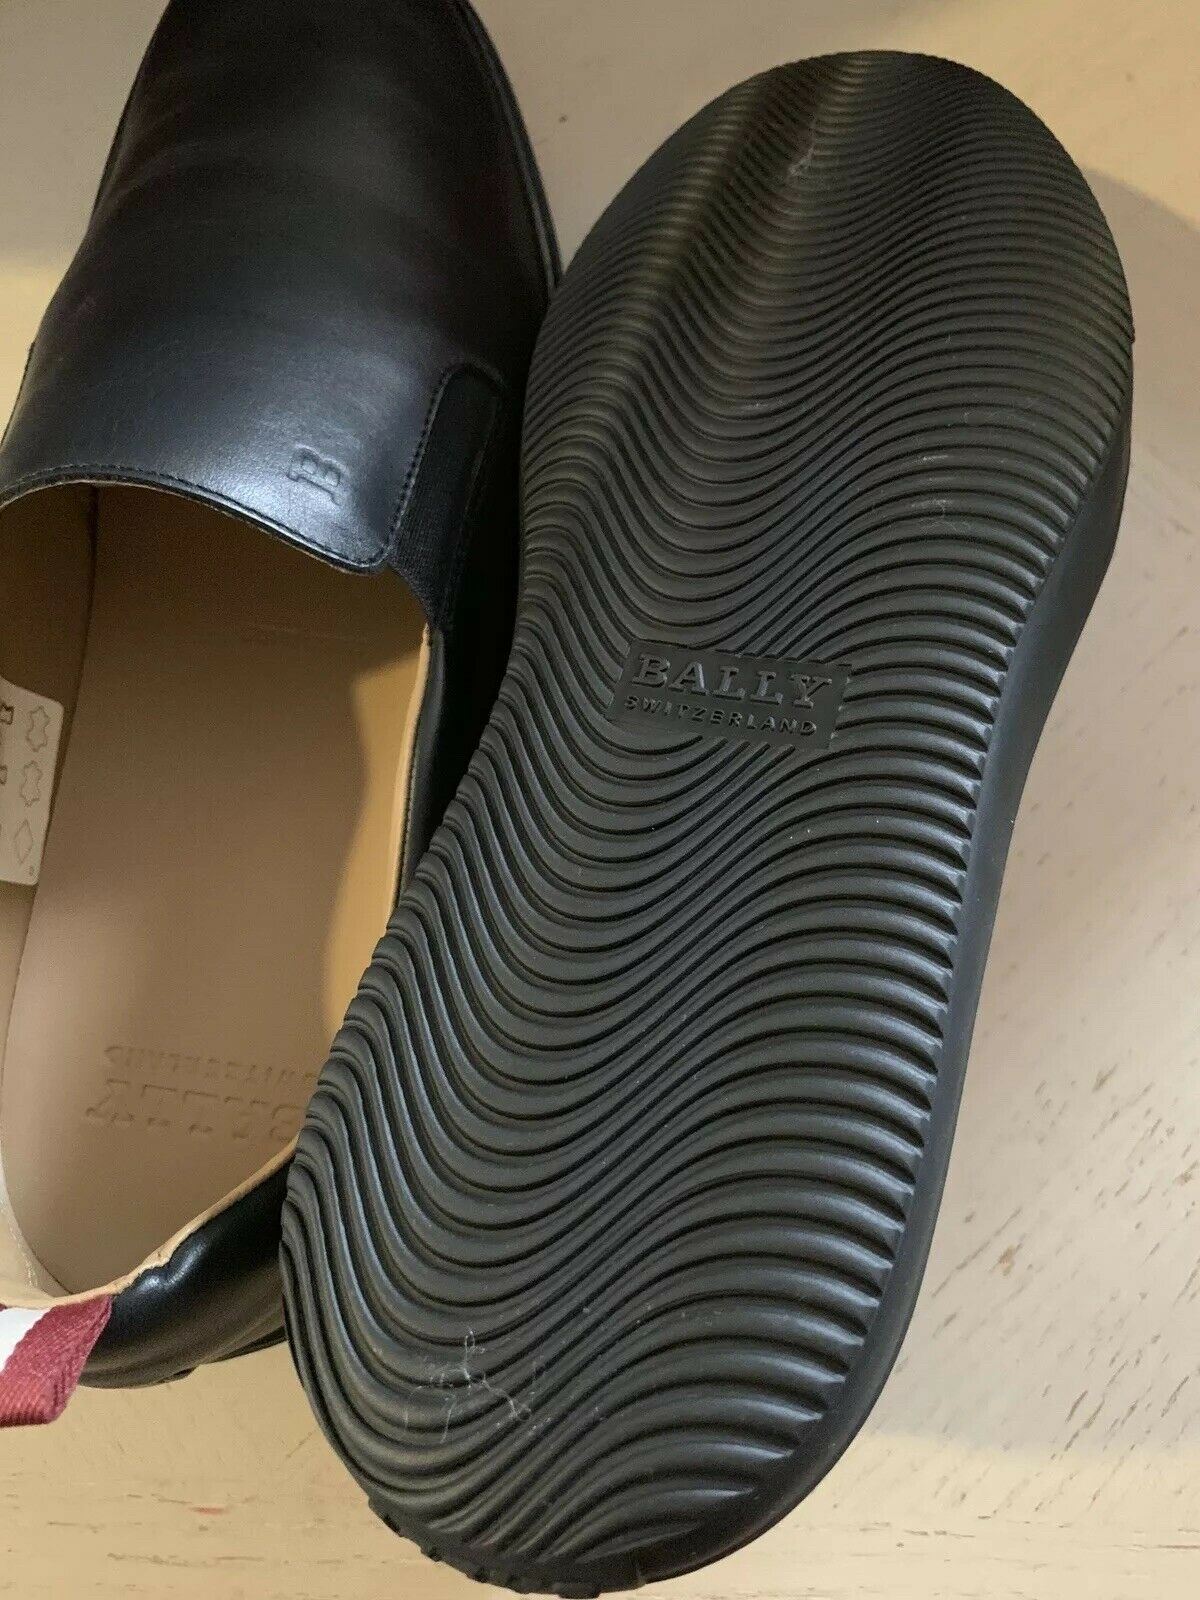 Новые мужские кожаные кроссовки Bally Orniel за 510 долларов США, черные 10,5 США, Швейцария